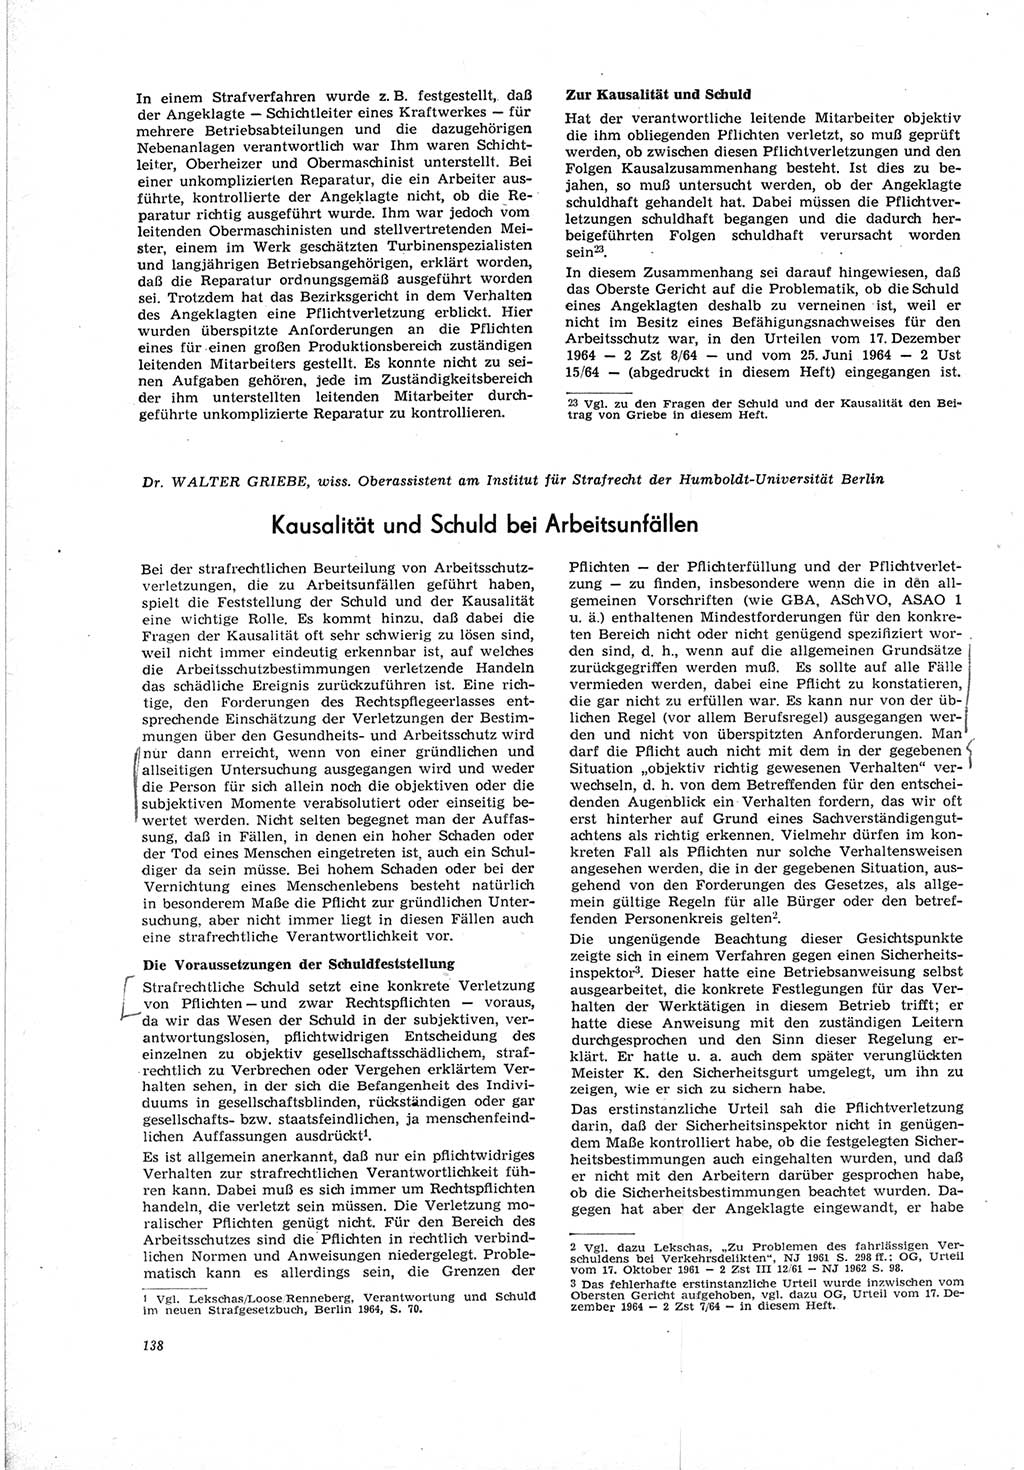 Neue Justiz (NJ), Zeitschrift für Recht und Rechtswissenschaft [Deutsche Demokratische Republik (DDR)], 19. Jahrgang 1965, Seite 138 (NJ DDR 1965, S. 138)